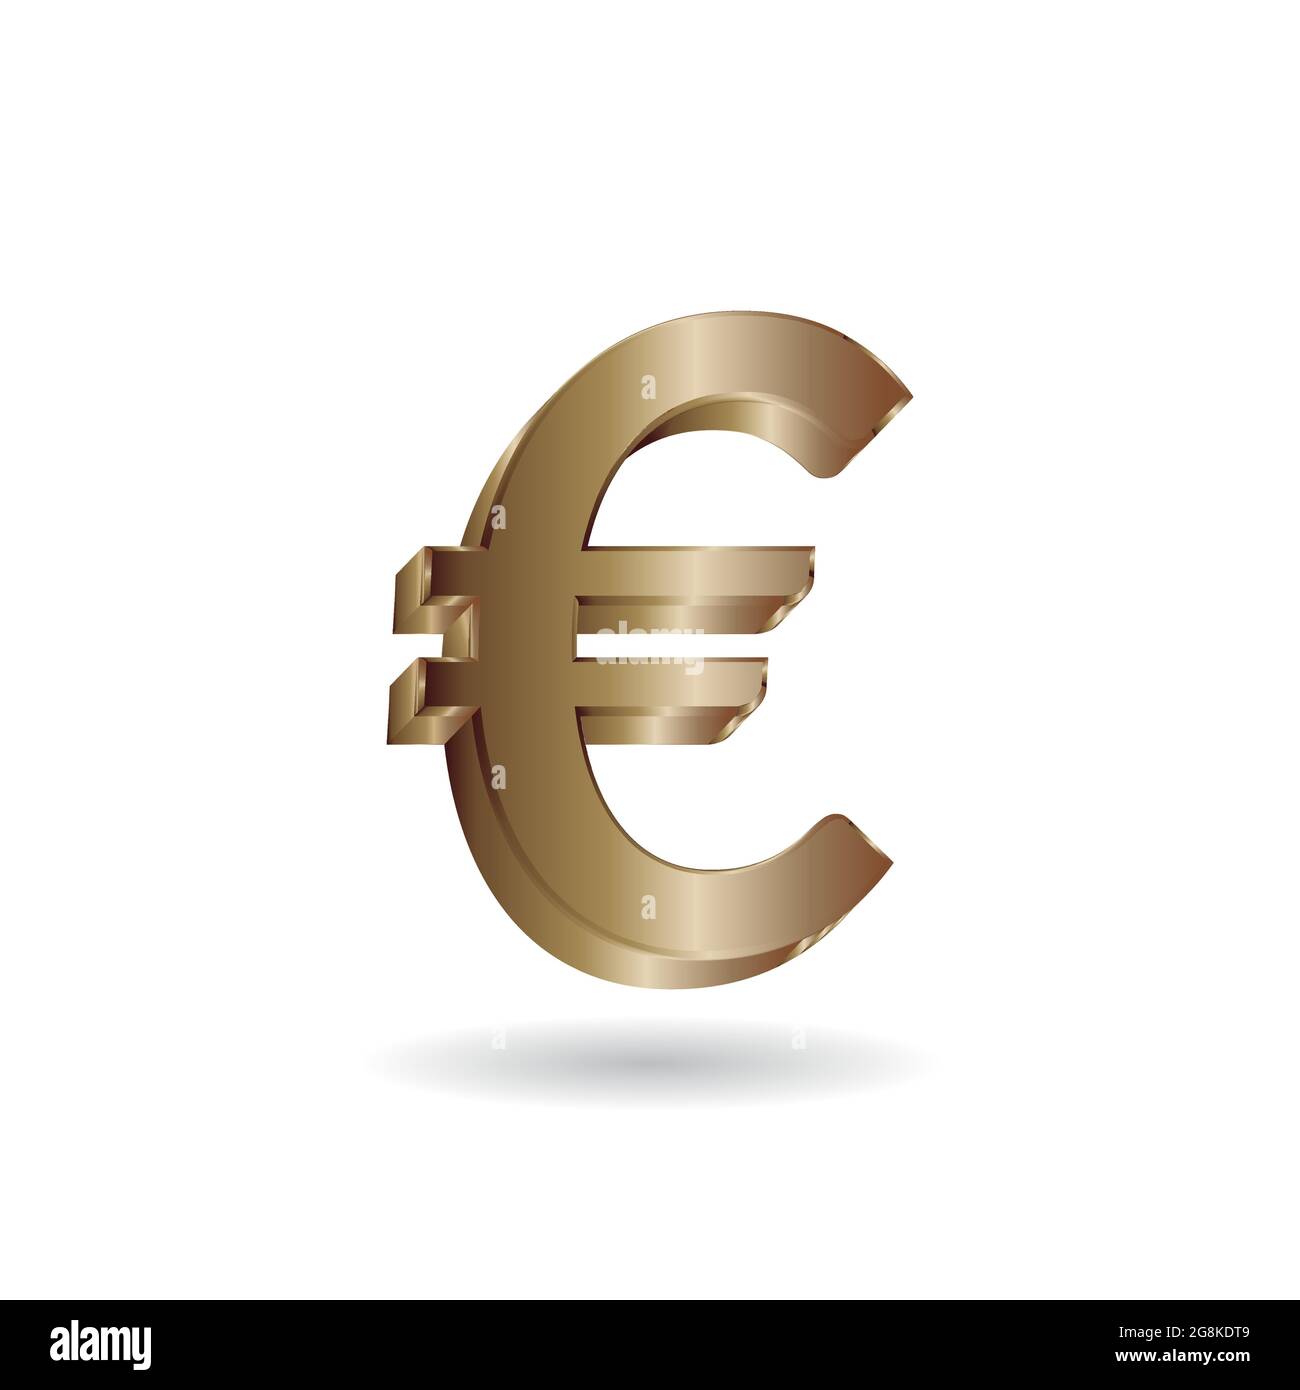 Immagine vettoriale 3D del simbolo dell'euro in oro isolato su sfondo bianco. Simbolo della valuta dell'Unione europea. Illustrazione Vettoriale